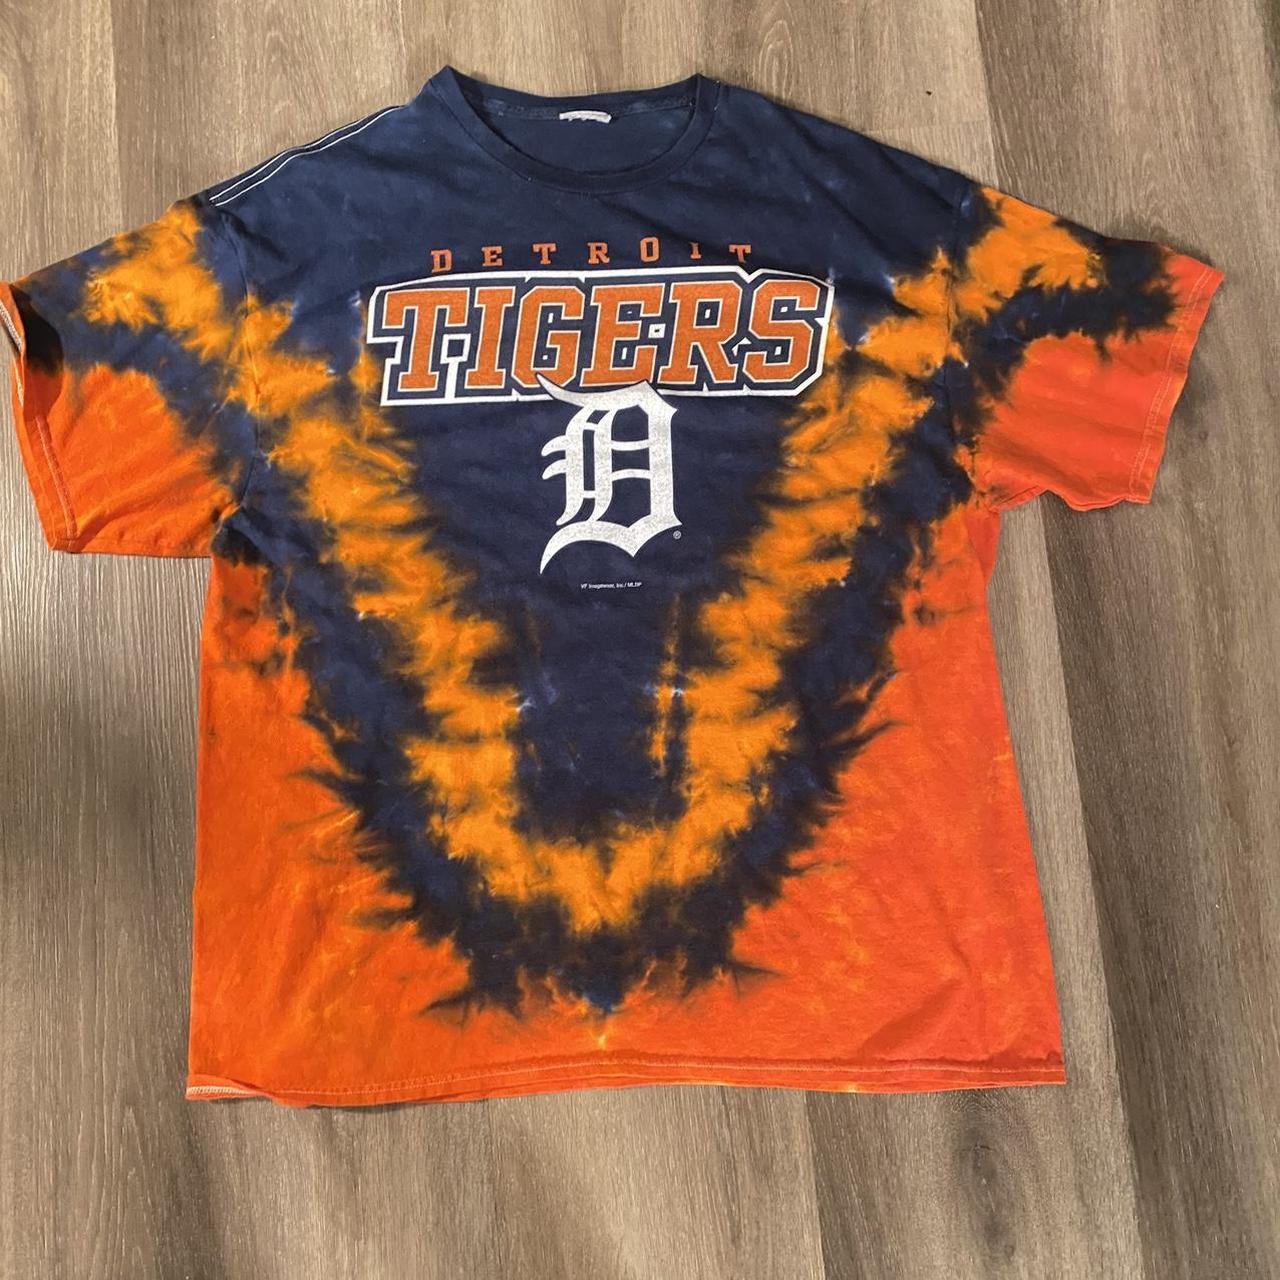 detroit tigers tie dye t shirt